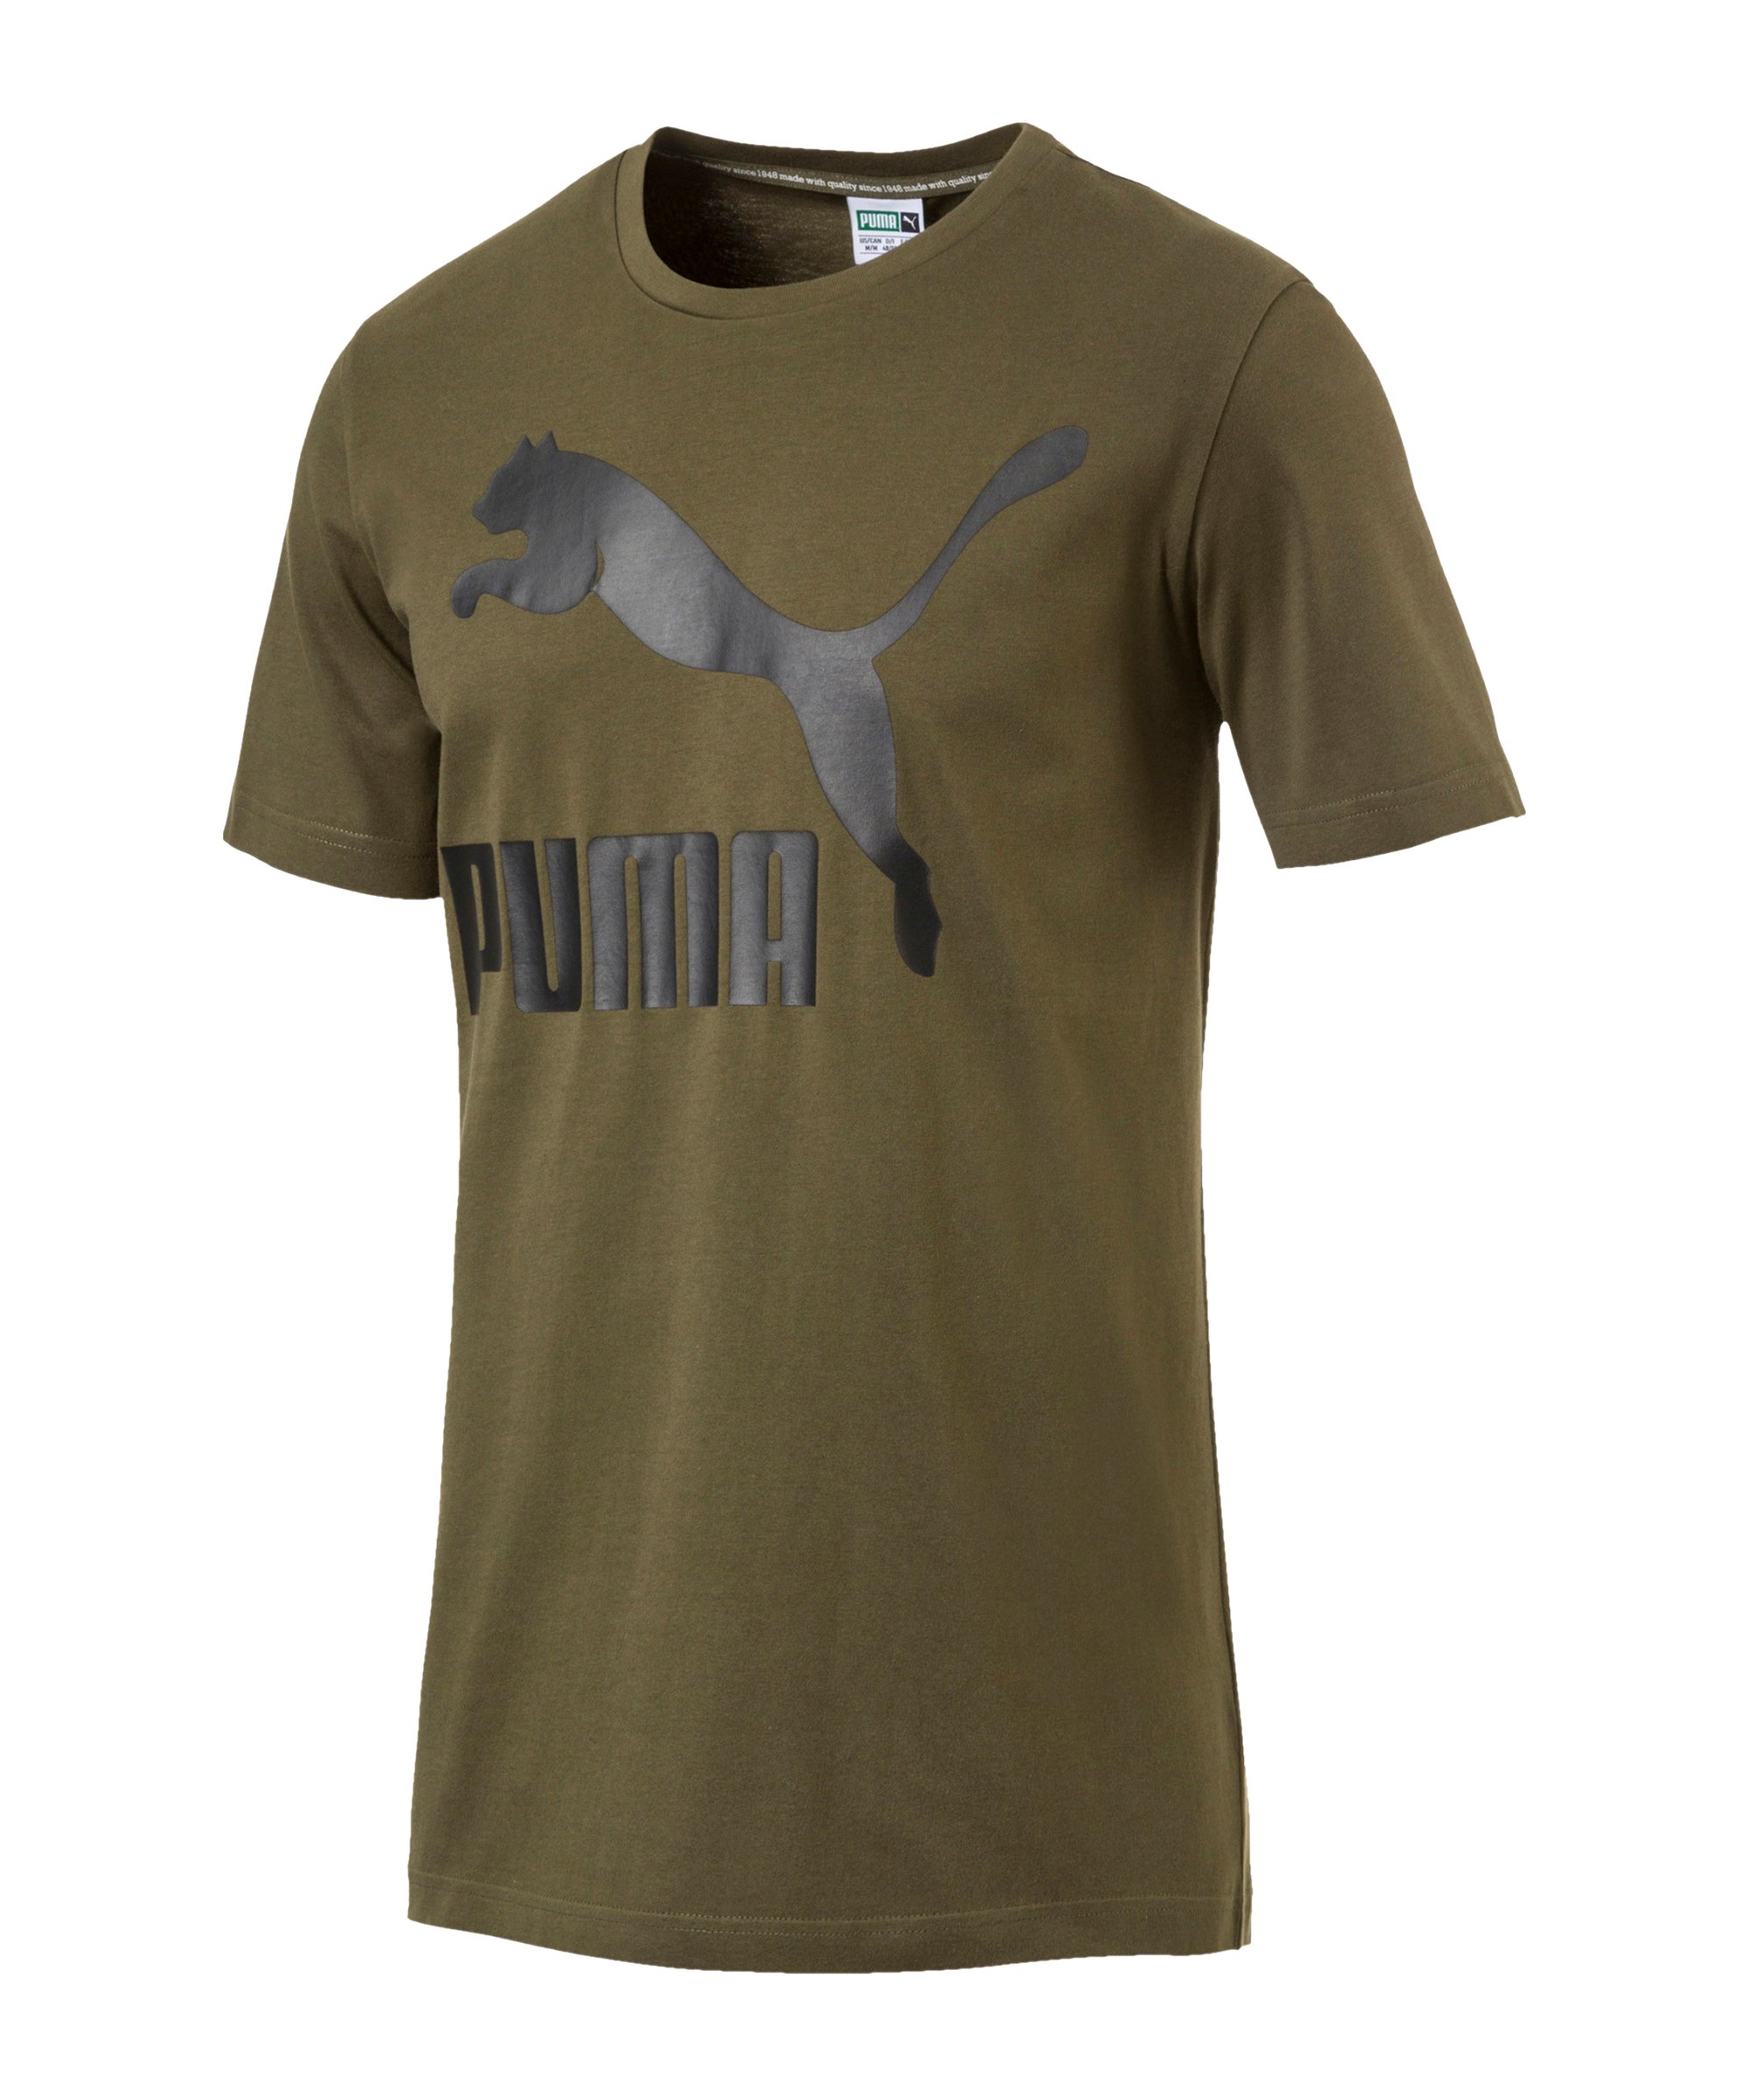 PUMA Archive Logo Tee Print T-Shirt Khaki F14 - khaki